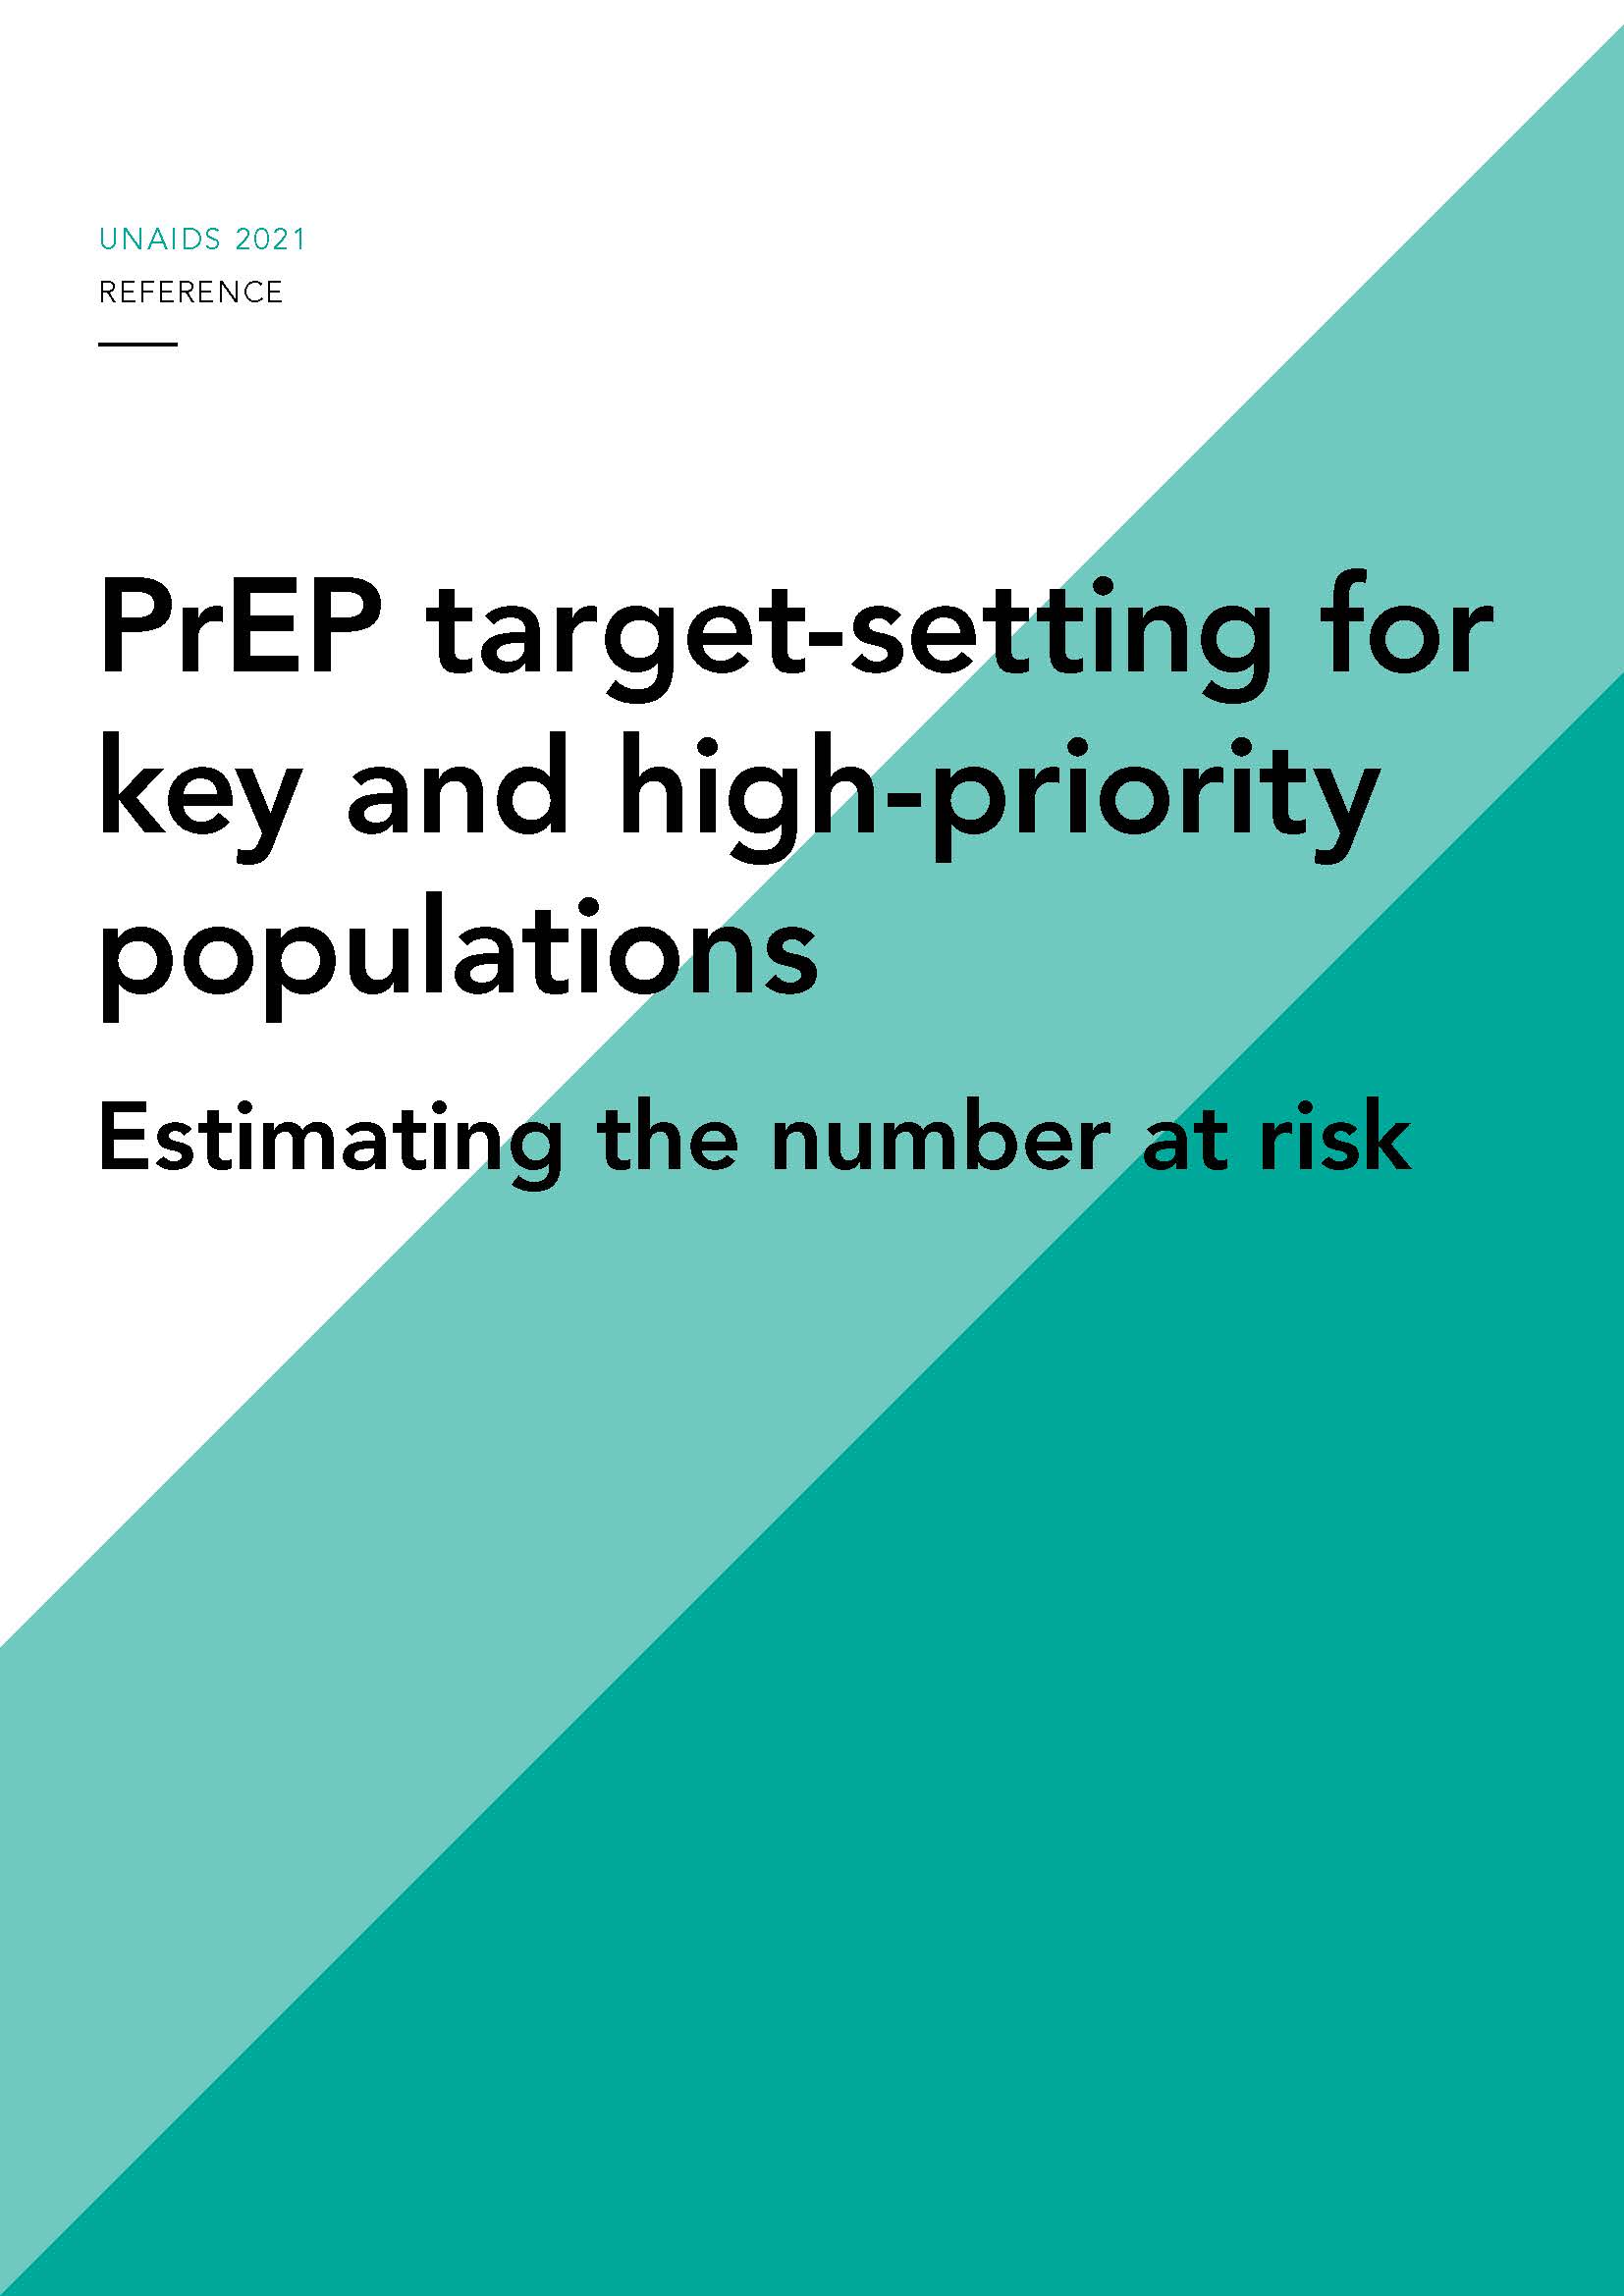 Definição do objetivo da PrEP: estimar o número de pessoas em risco